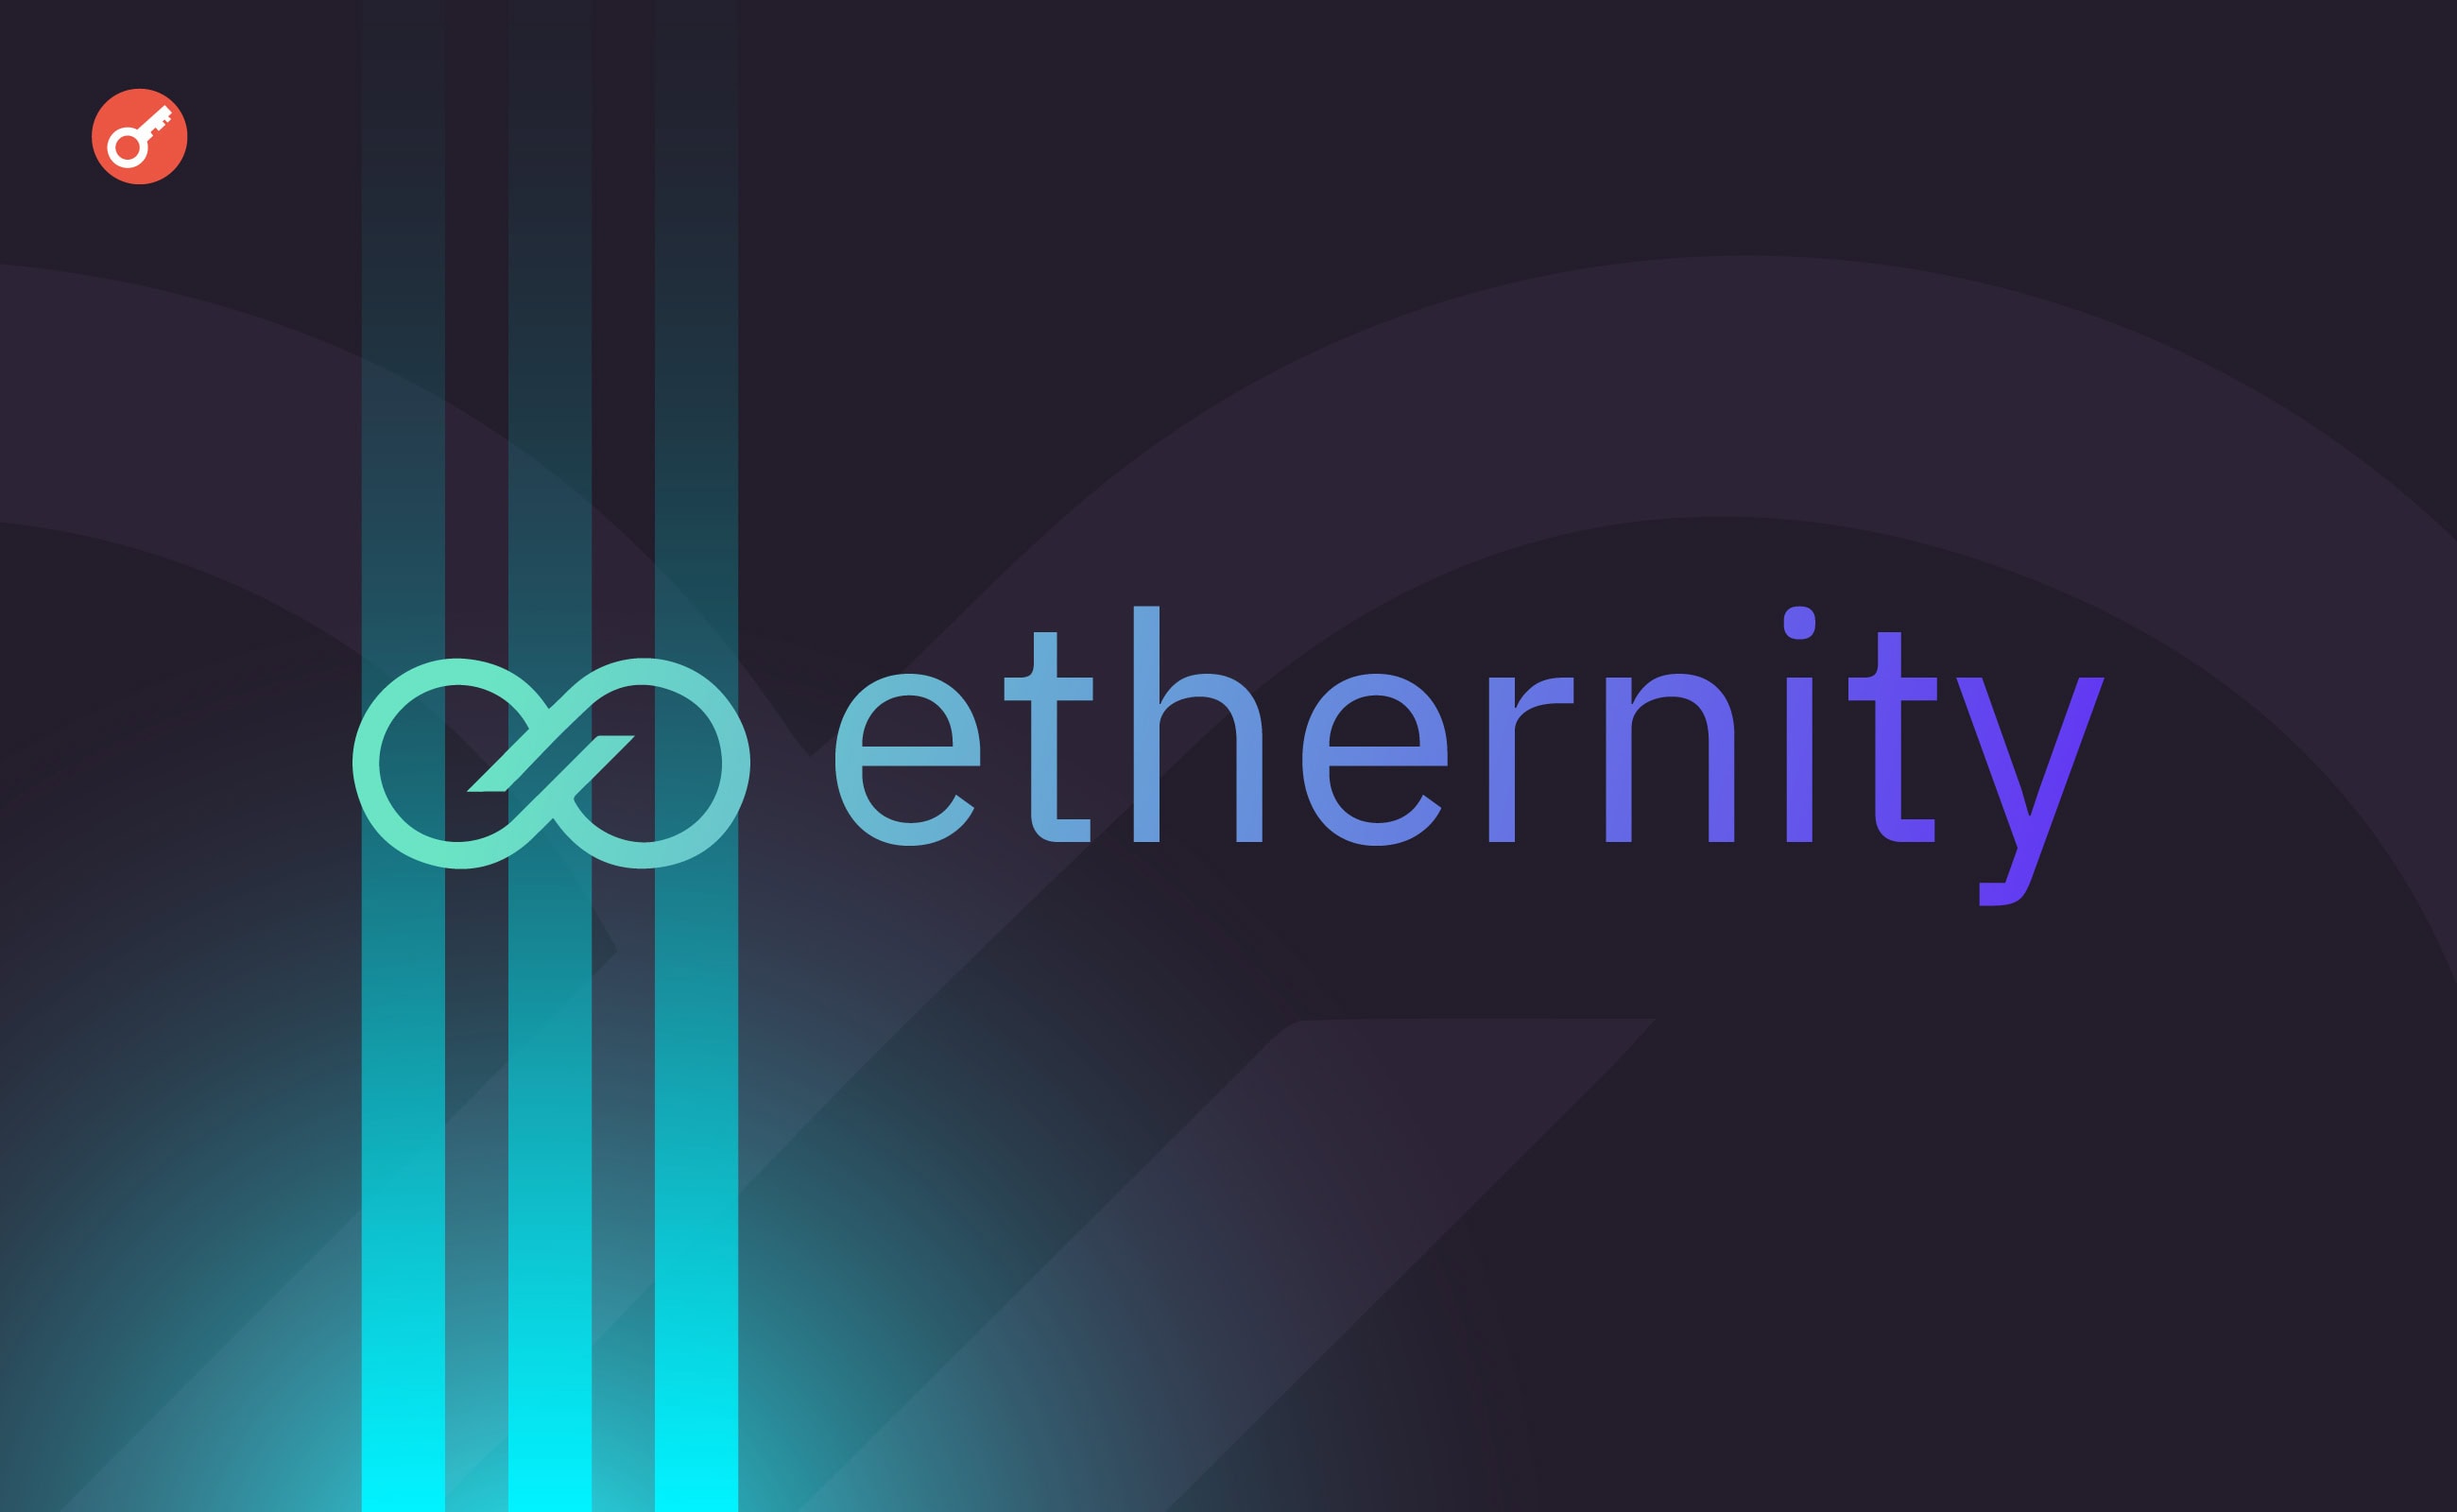 Platforma Ethernity ogłosiła transformację w sieć L2 z wbudowaną sztuczną inteligencją. Główny kolaż wiadomości.